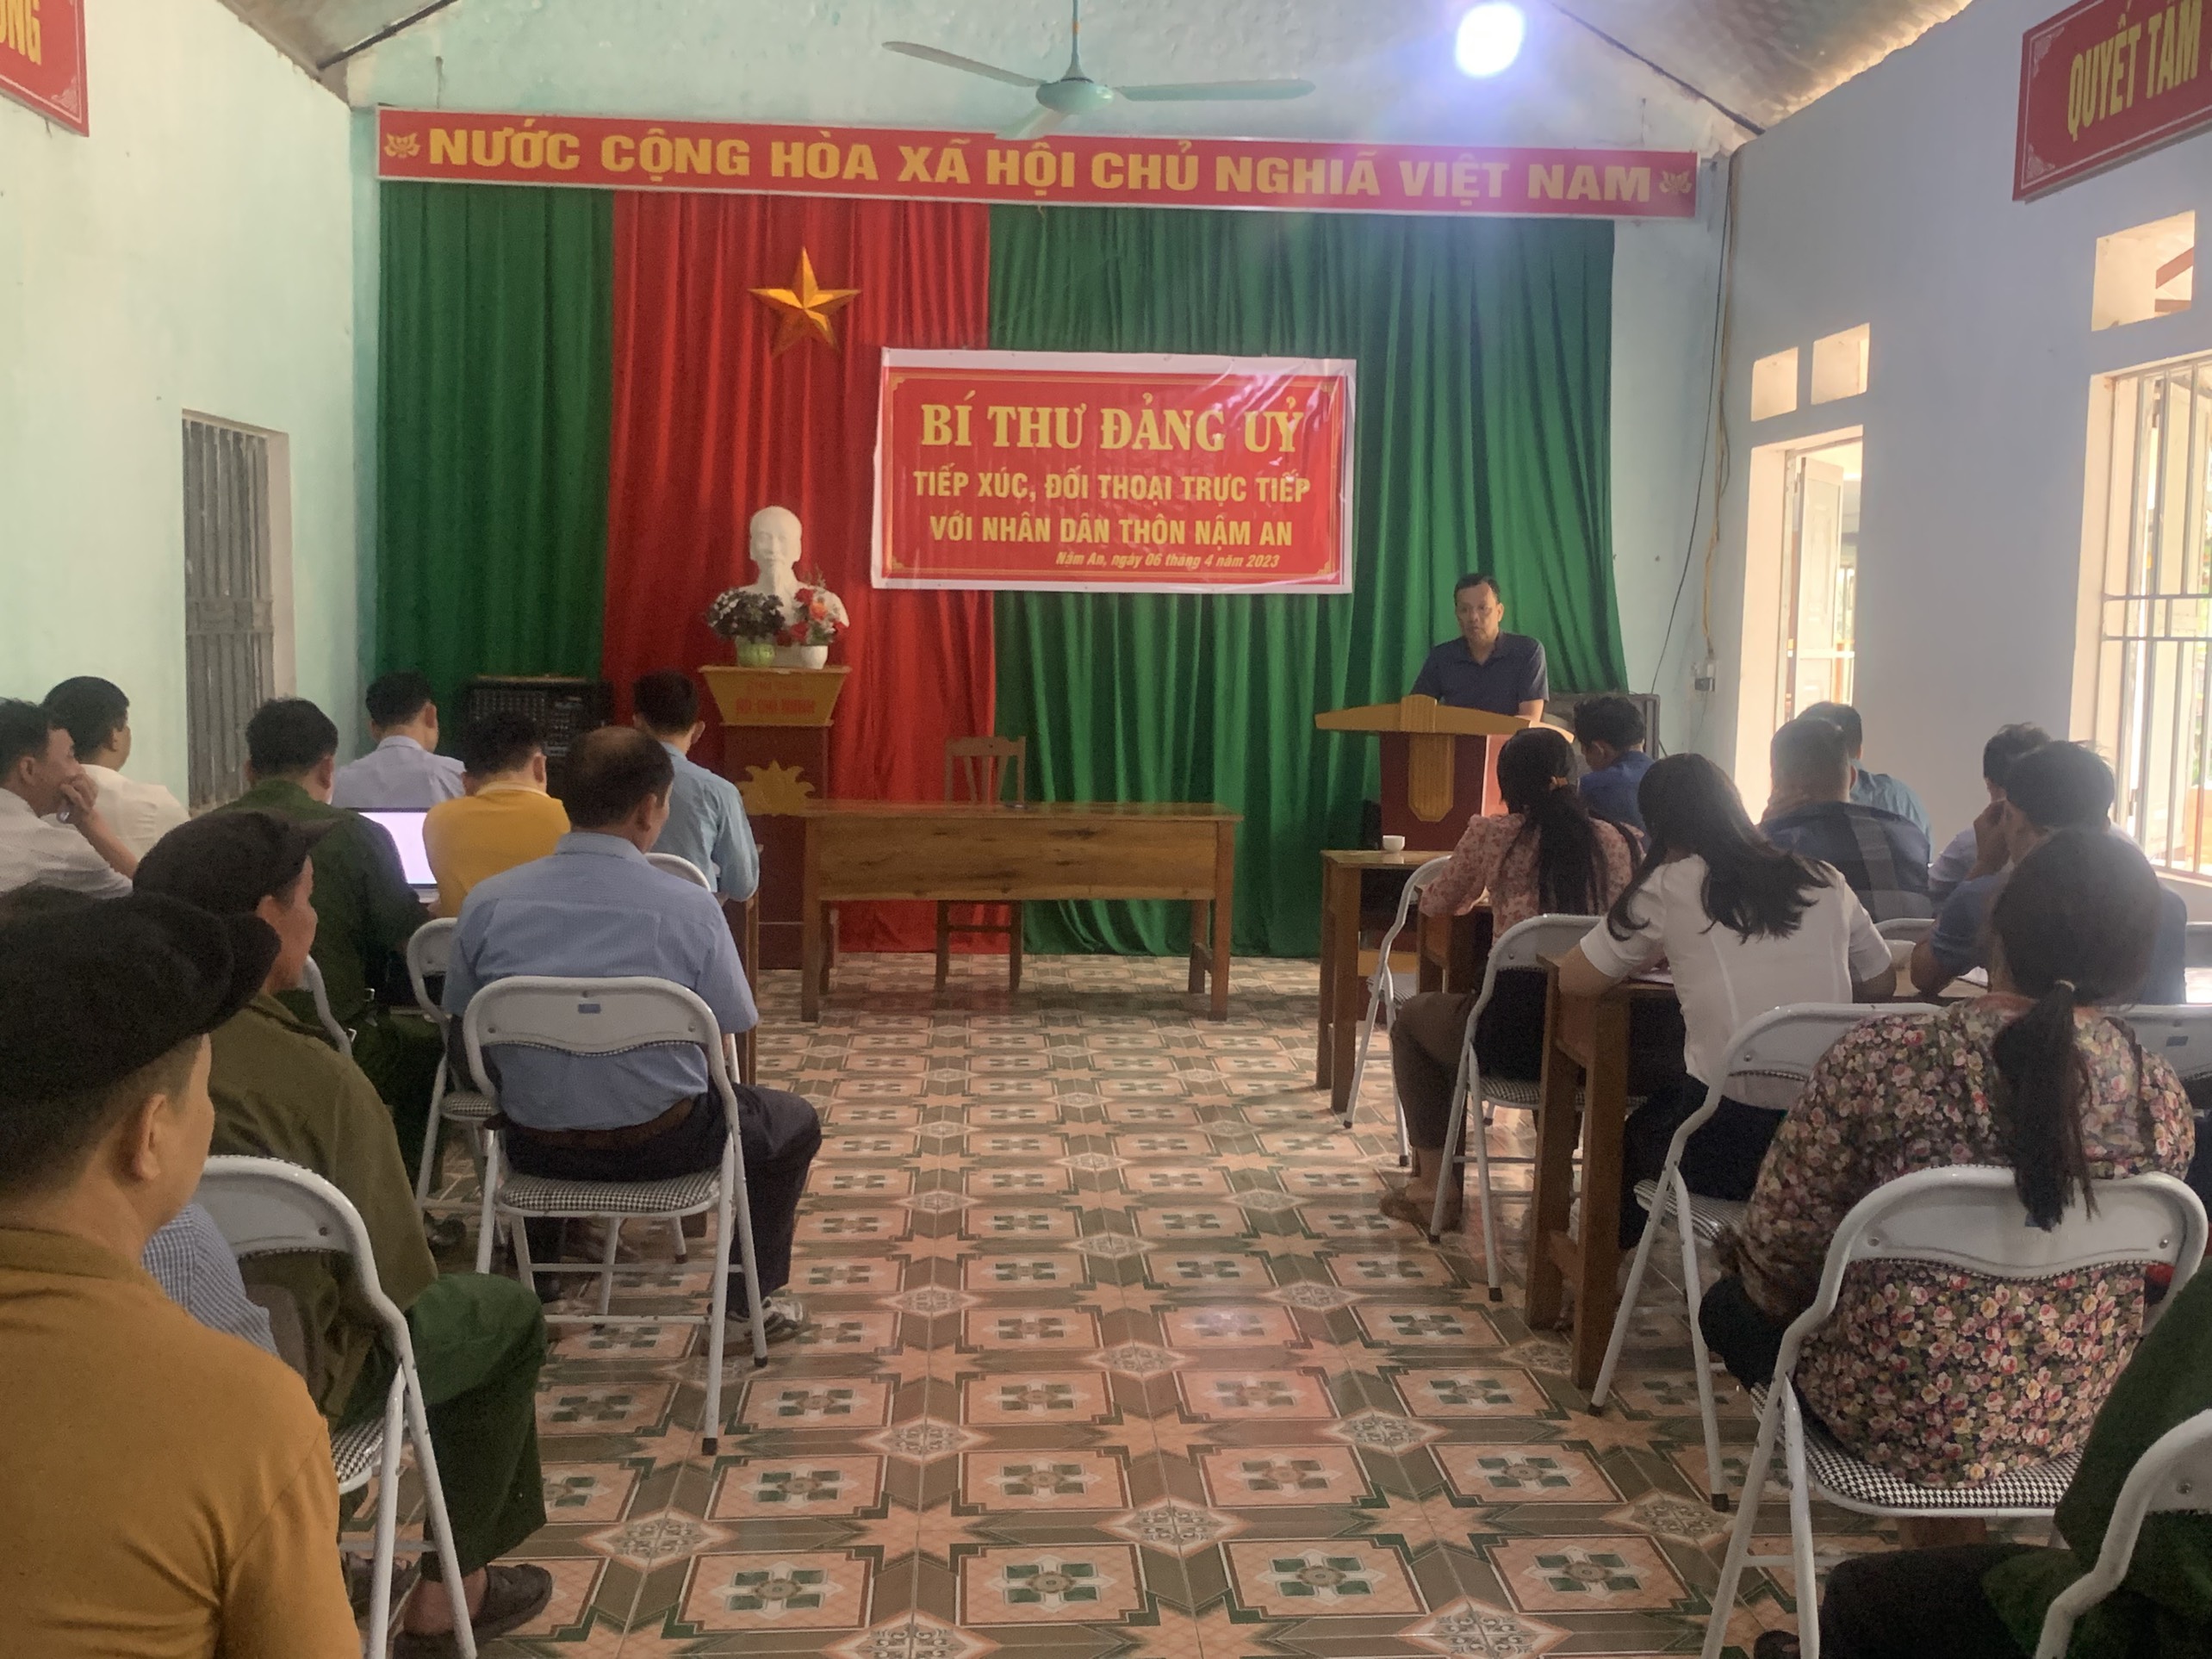 Bí thư Đảng ủy tiếp xúc đối thoại trực tiếp với nhân thôn Nậm An